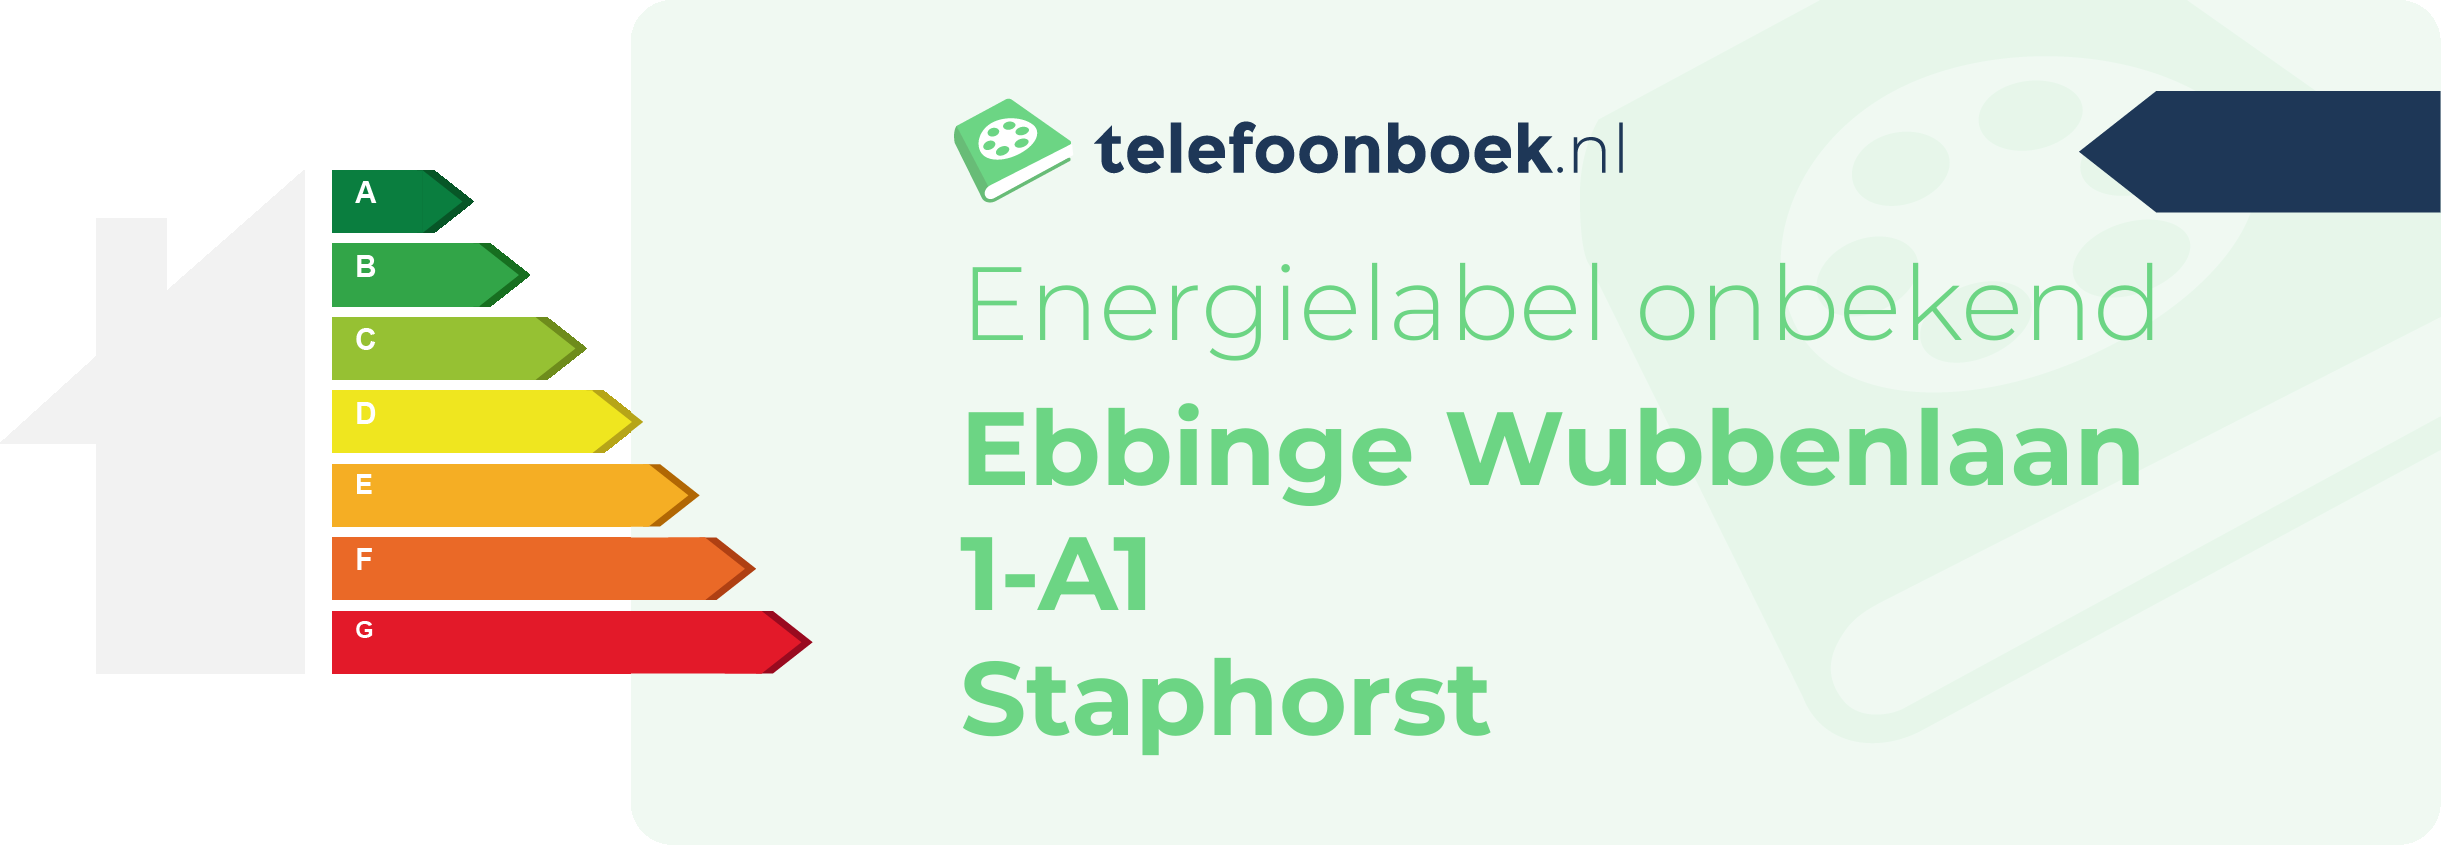 Energielabel Ebbinge Wubbenlaan 1-A1 Staphorst